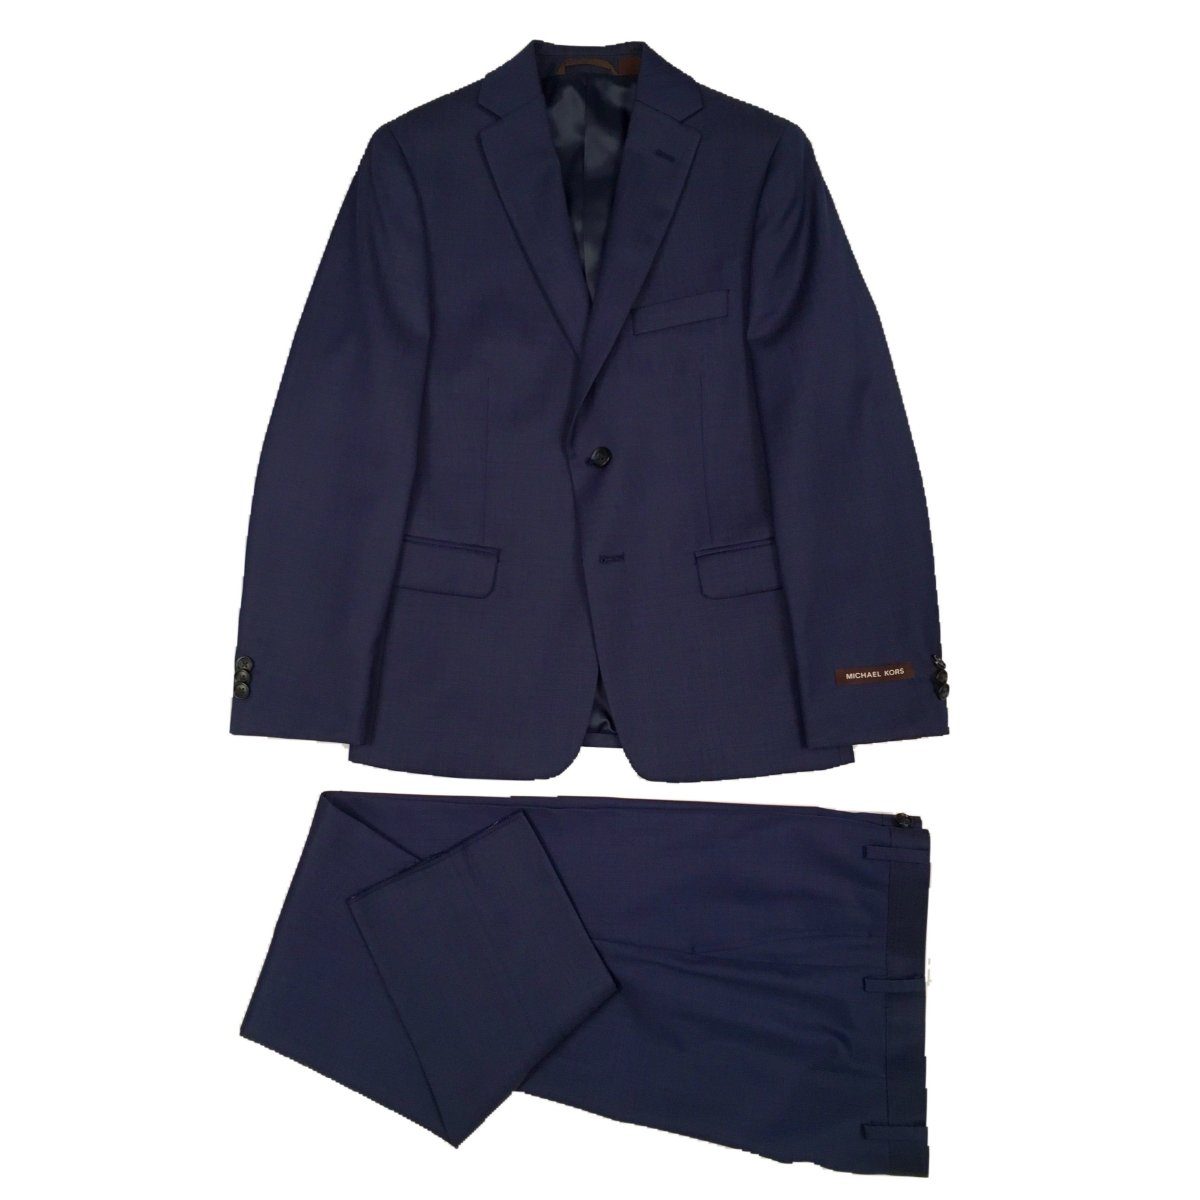 Michael Kors Boys Tic Bright Blue Wool Suit Z0044 Suits (Boys) Michael Kors 